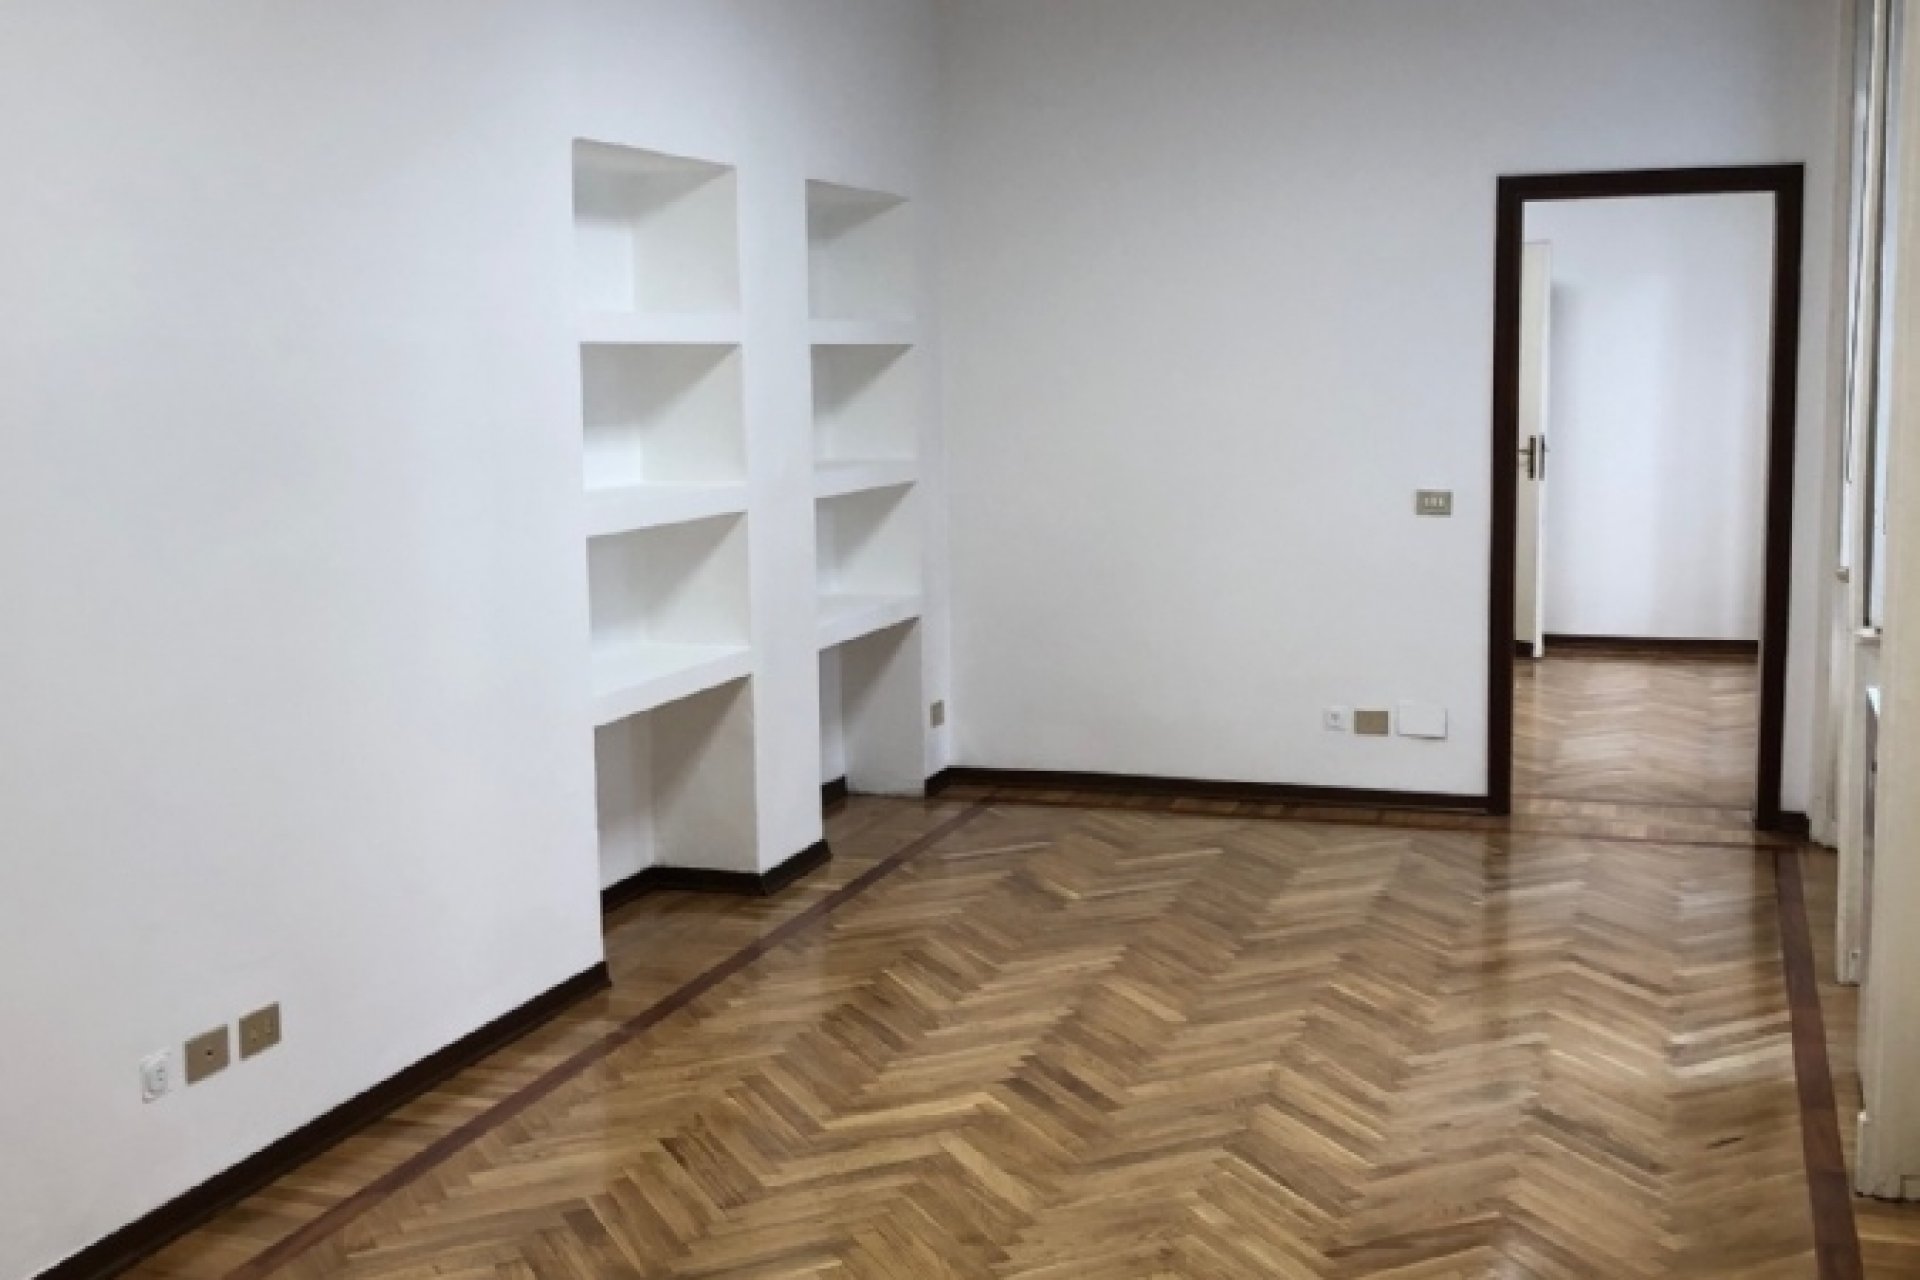 Affitto Apartment Milano - APARTMENT FOR RENT - ARCO DELLA PACE Locality Arco della Pace - Arena - Moscova